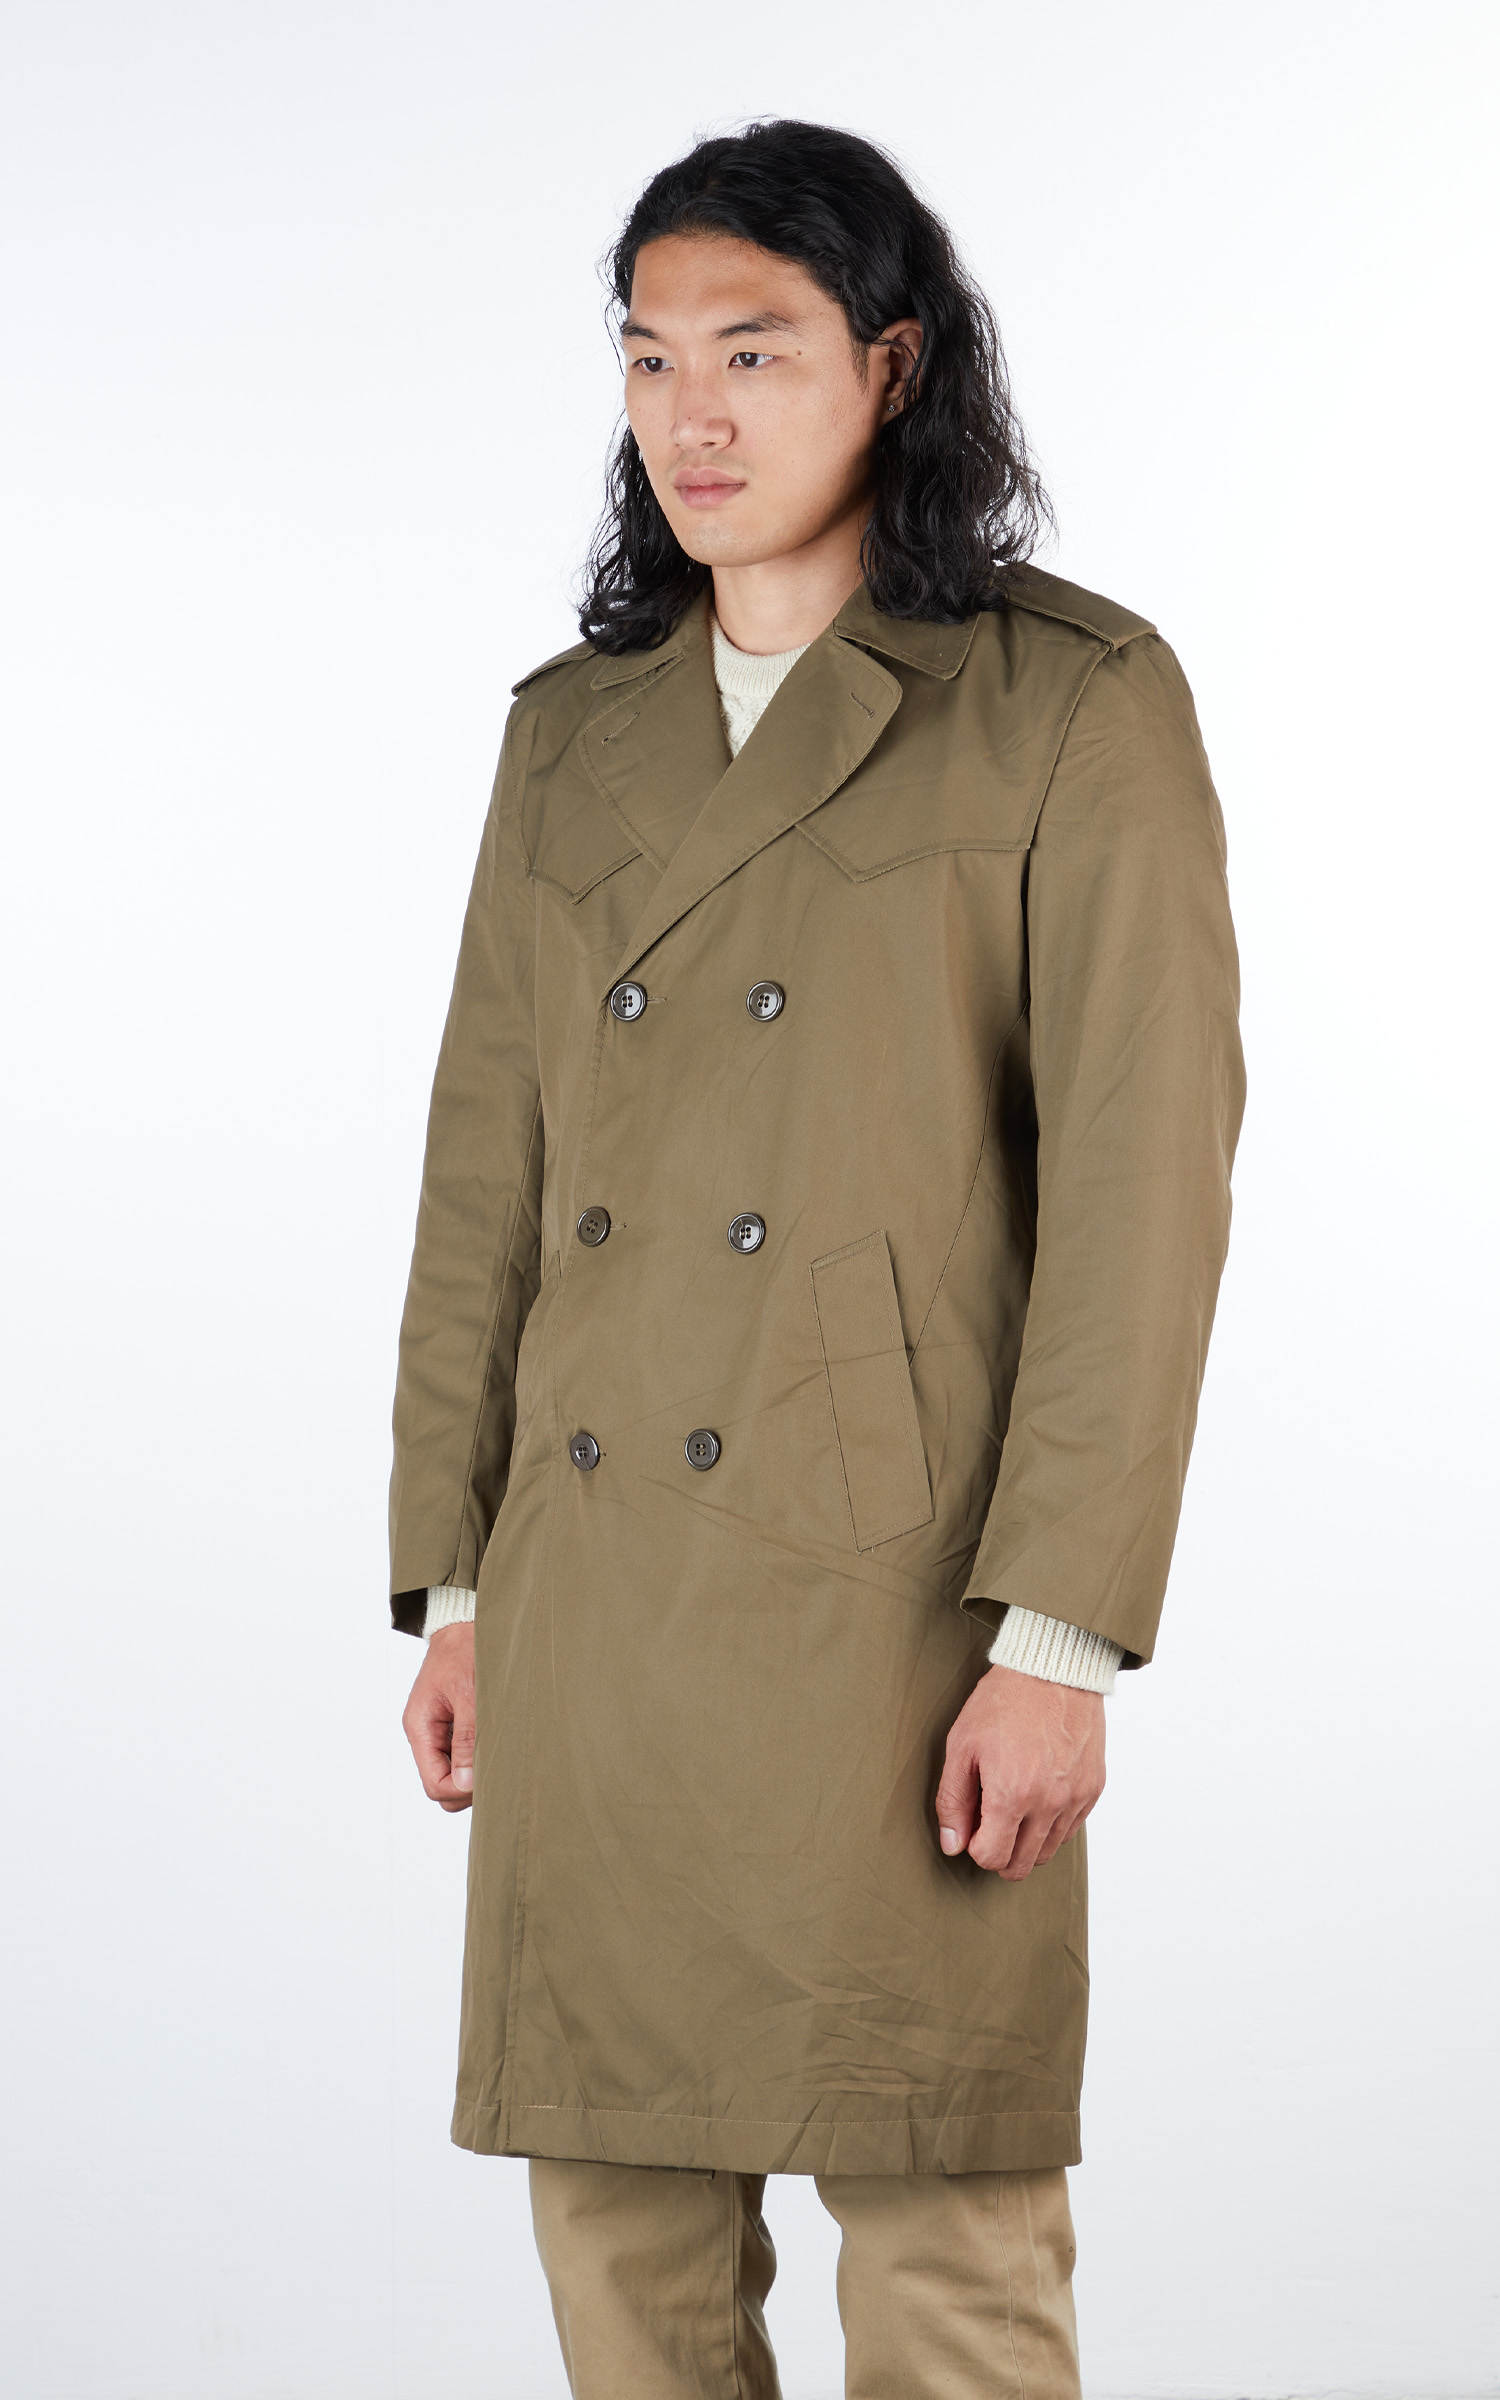 のみとさせ Italy army trench coat のサイズ